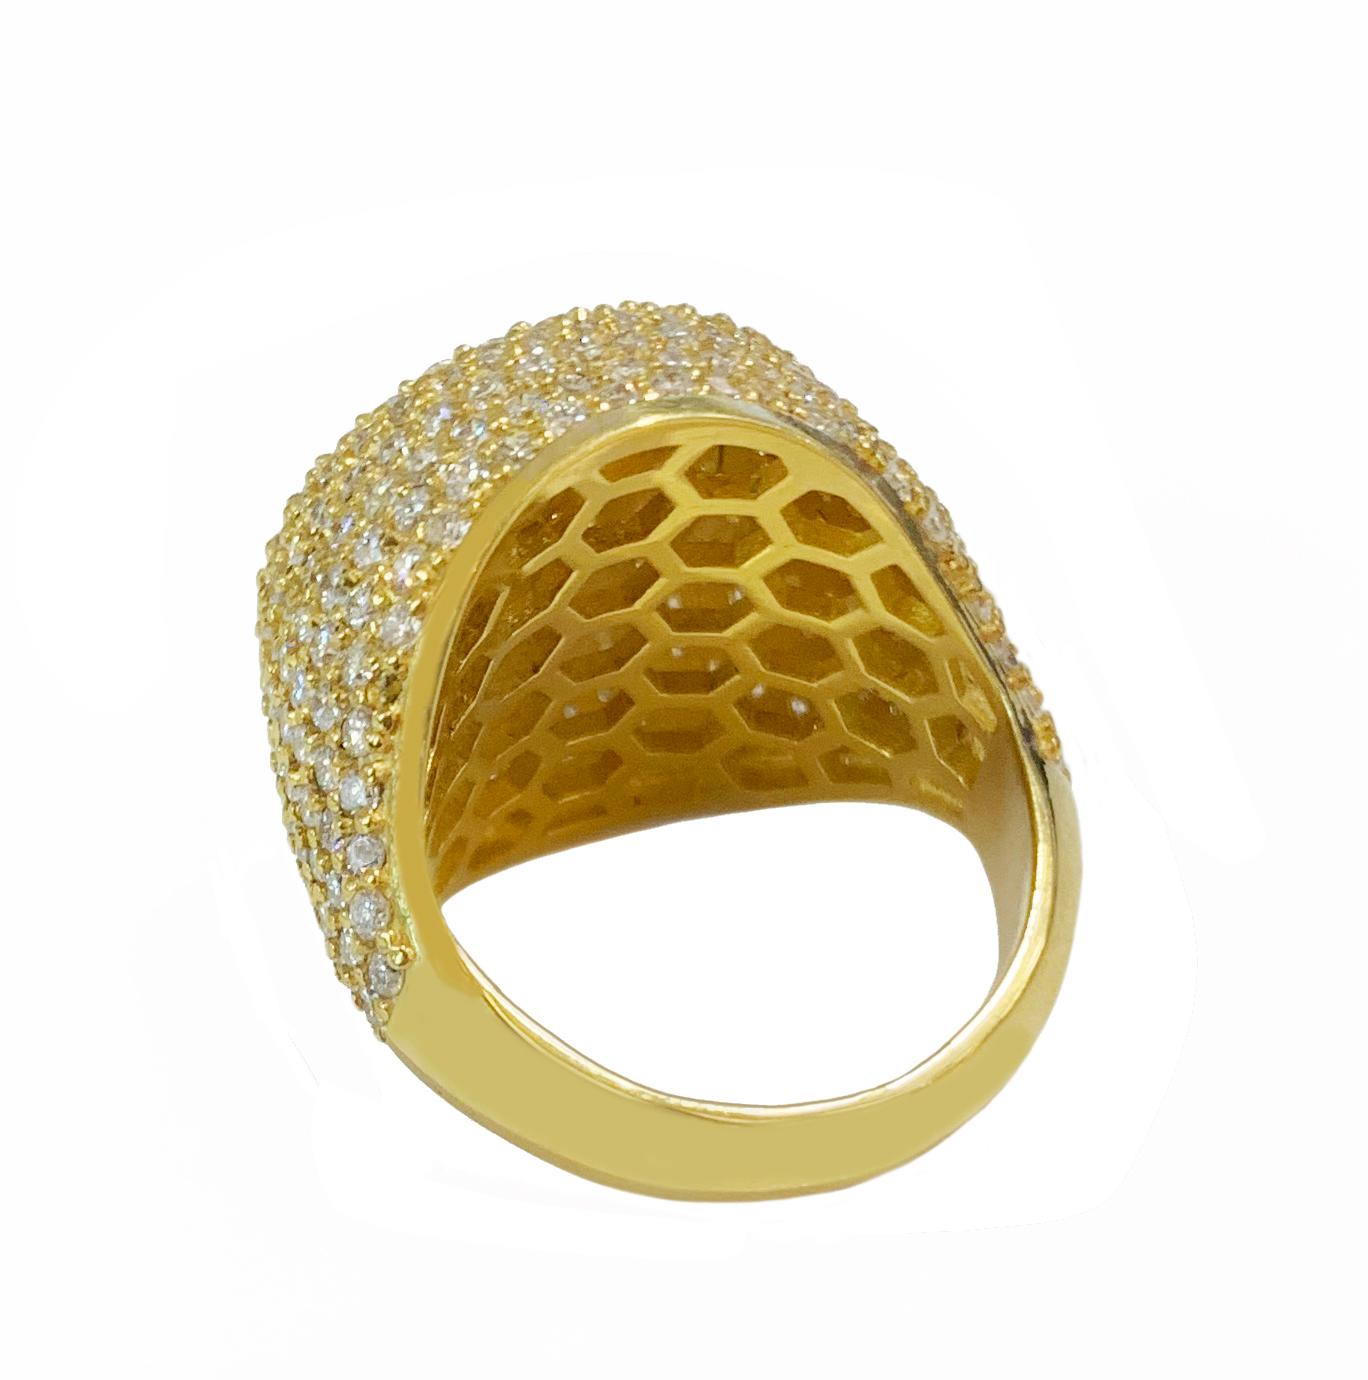 Matériau : or jaune 14k 
Poids : 13.9gr 
Pierres : Diamant 
Diamants : 3.75ct VS clarté G couleur 
Taille de l'anneau : 7.5
Dimension de l'ornement : 21x22mm